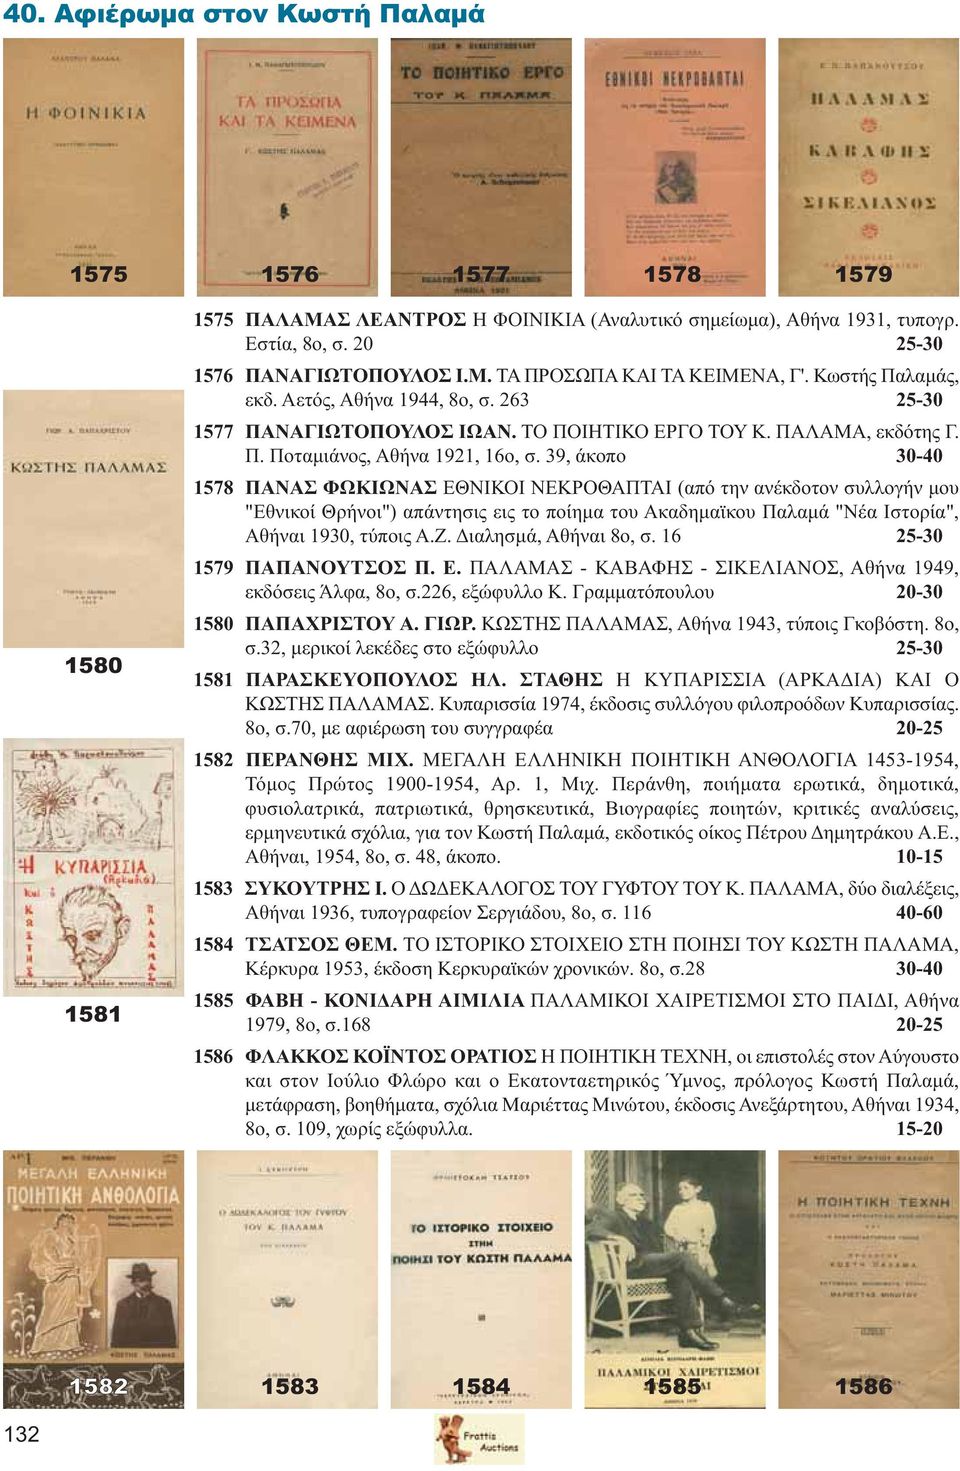 39, άκοπο 30-40 1578 ΠΑΝΑΣ ΦΩΚΙΩΝΑΣ ΕΘΝΙΚΟΙ ΝΕΚΡΟΘΑΠΤΑΙ (από την ανέκδοτον συλλογήν μου "Εθνικοί Θρήνοι") απάντησις εις το ποίημα του Ακαδημαϊκου Παλαμά "Νέα Ιστορία", Αθήναι 1930, τύποις Α.Ζ.